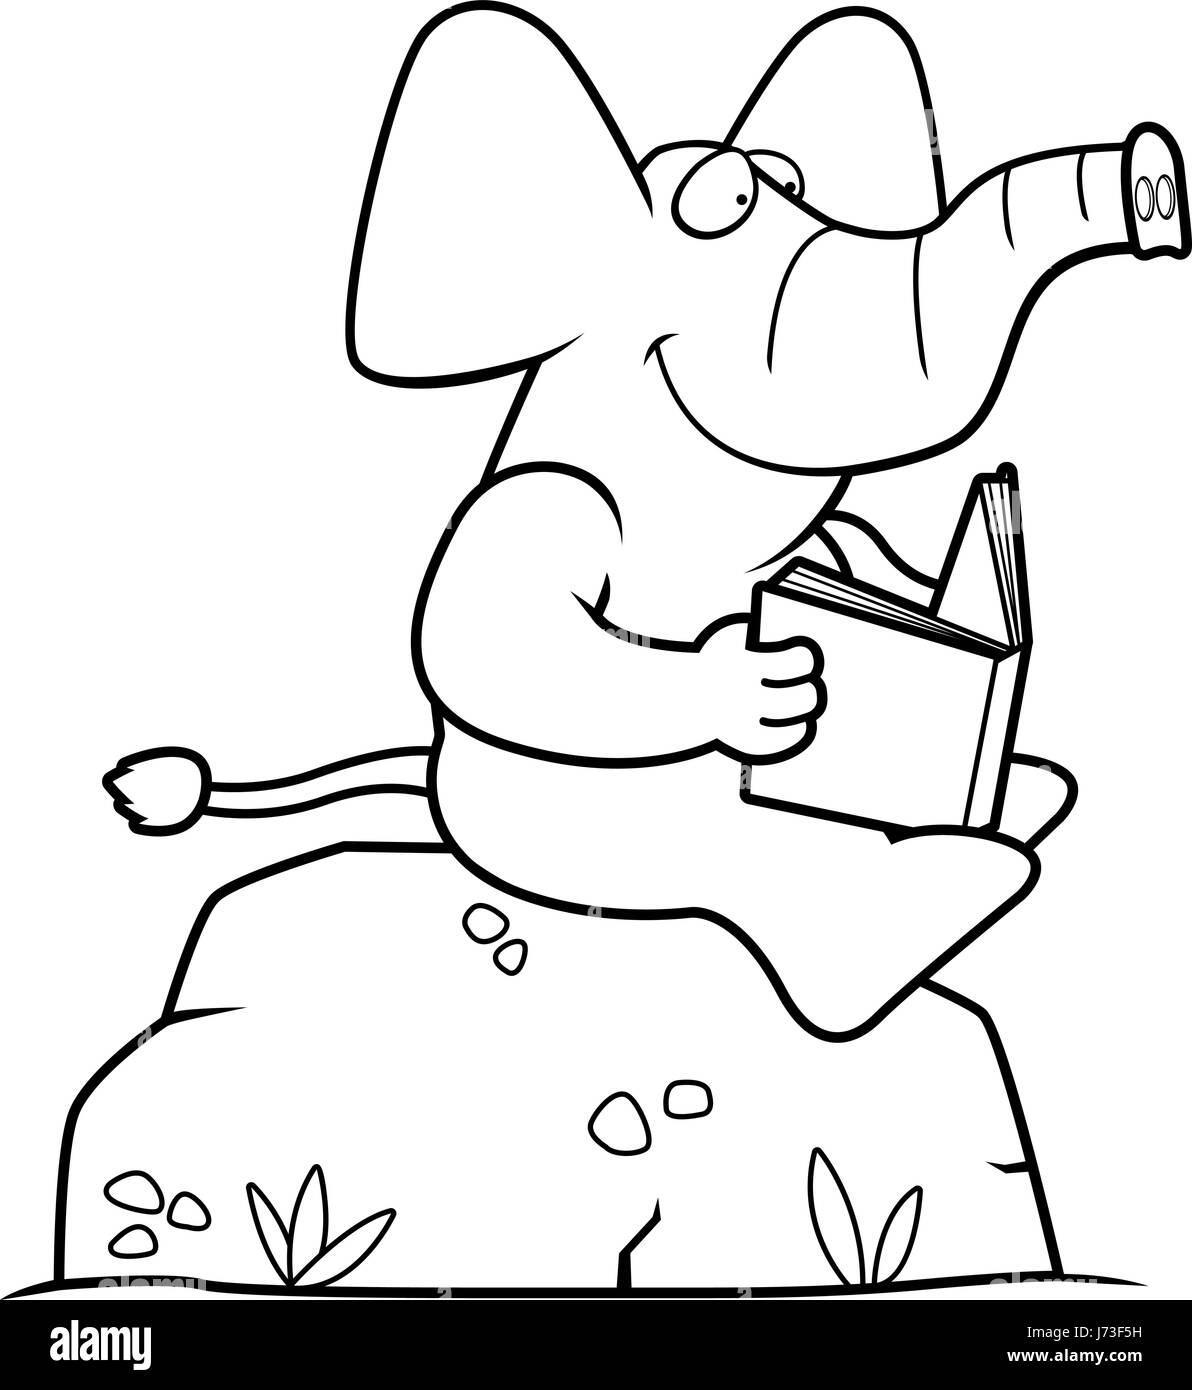 A cartoon elephant Banque d'images noir et blanc - Alamy